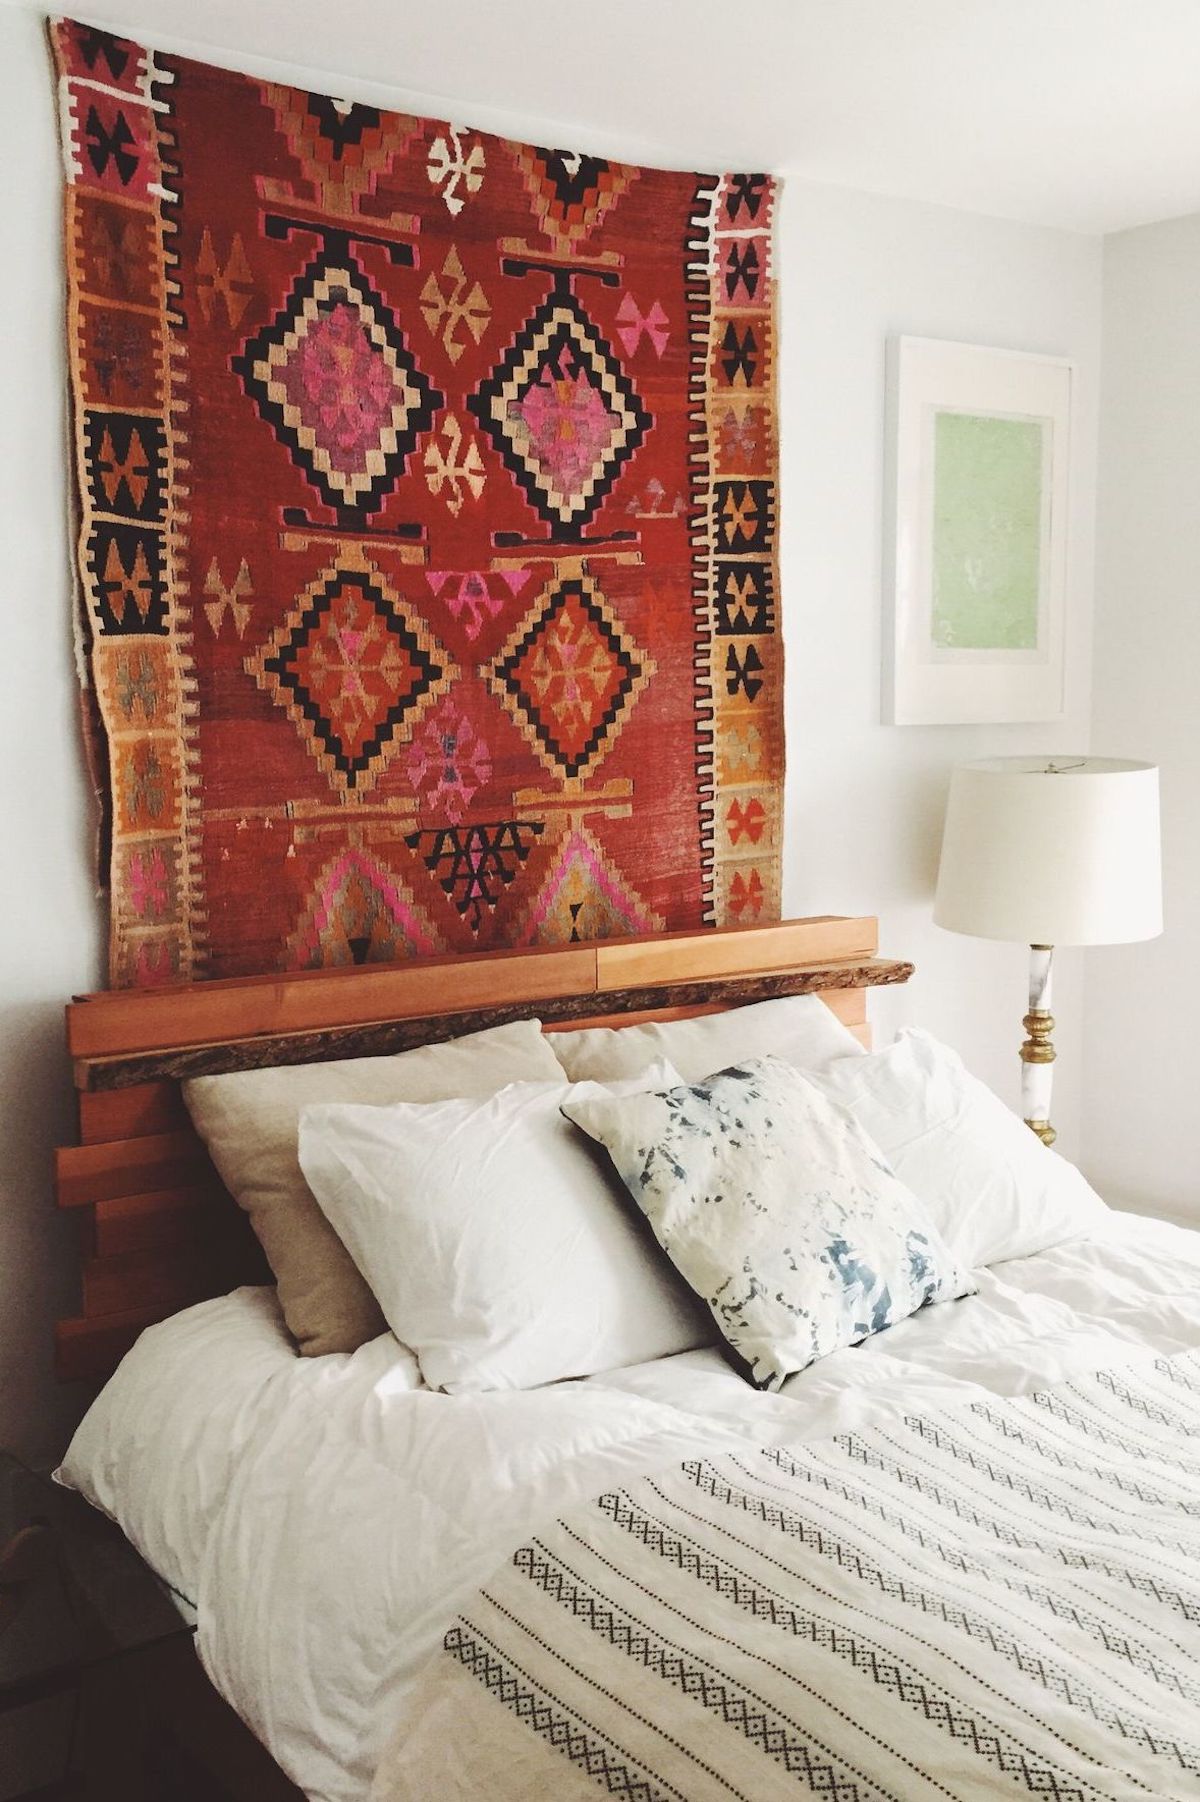 comment fixer un tapis au mur navajo apporte de la couleur à la chambre à coucher - blog déco - clem around the corner